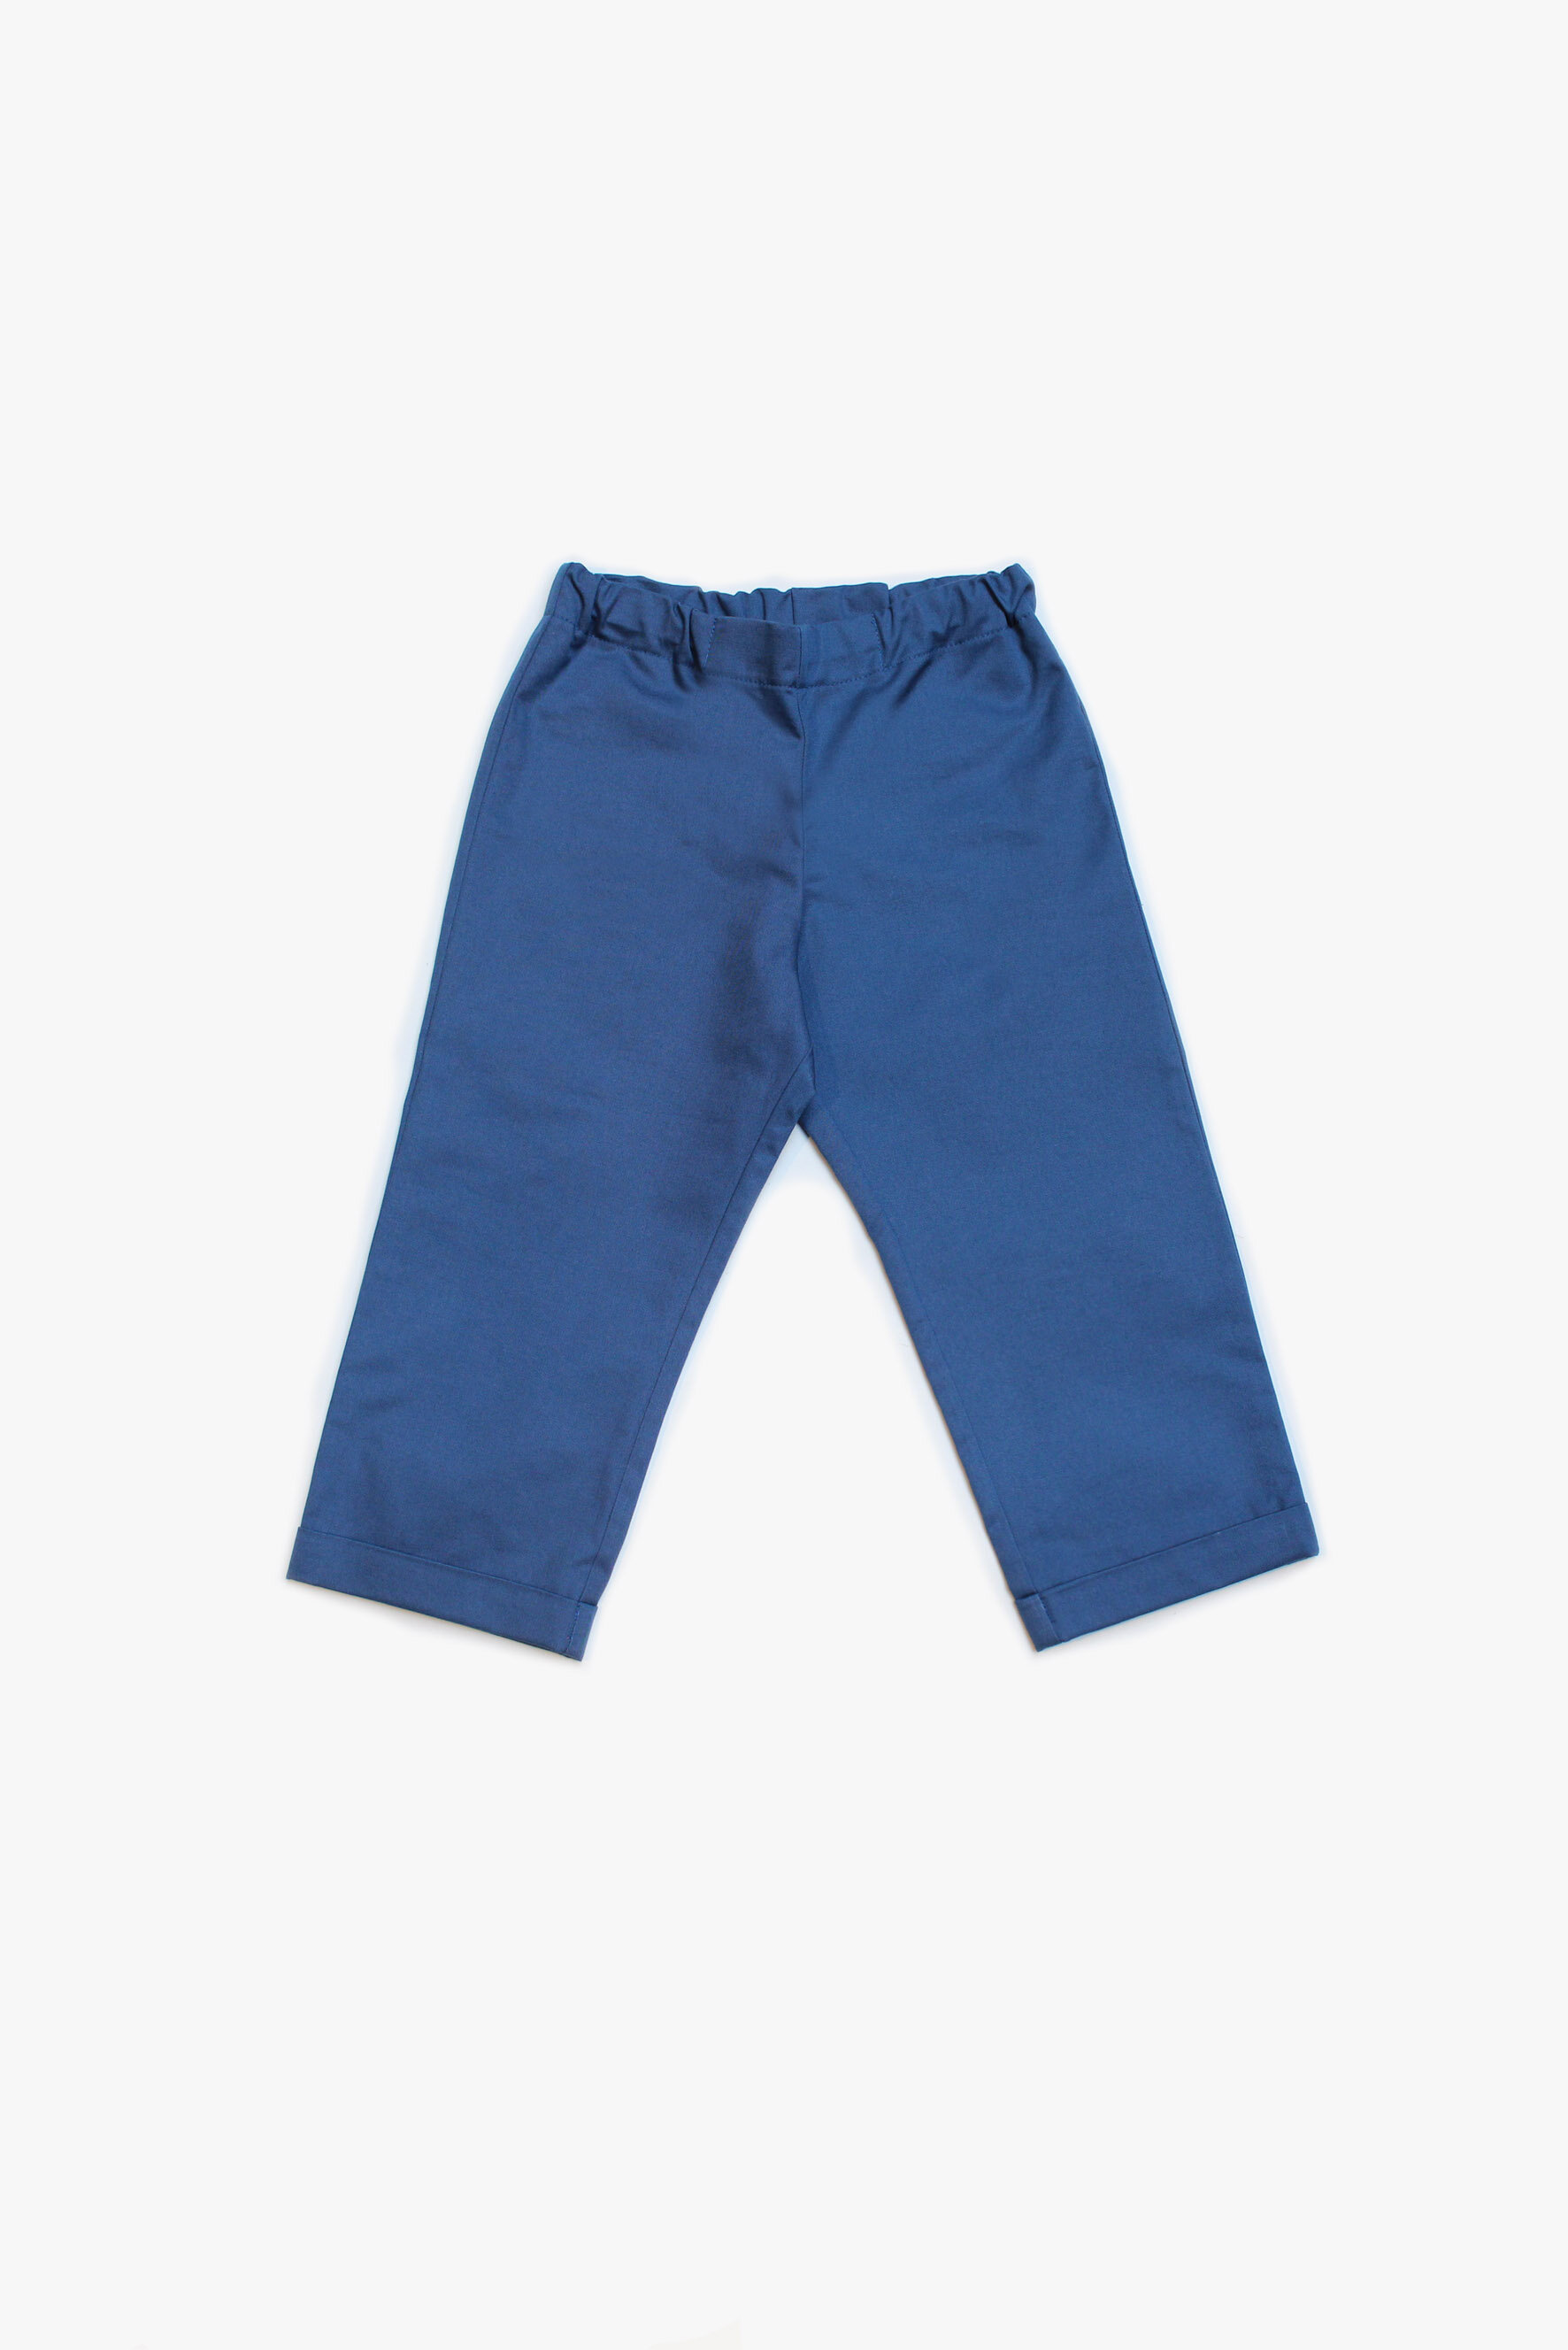 Pantaloni bambino blu